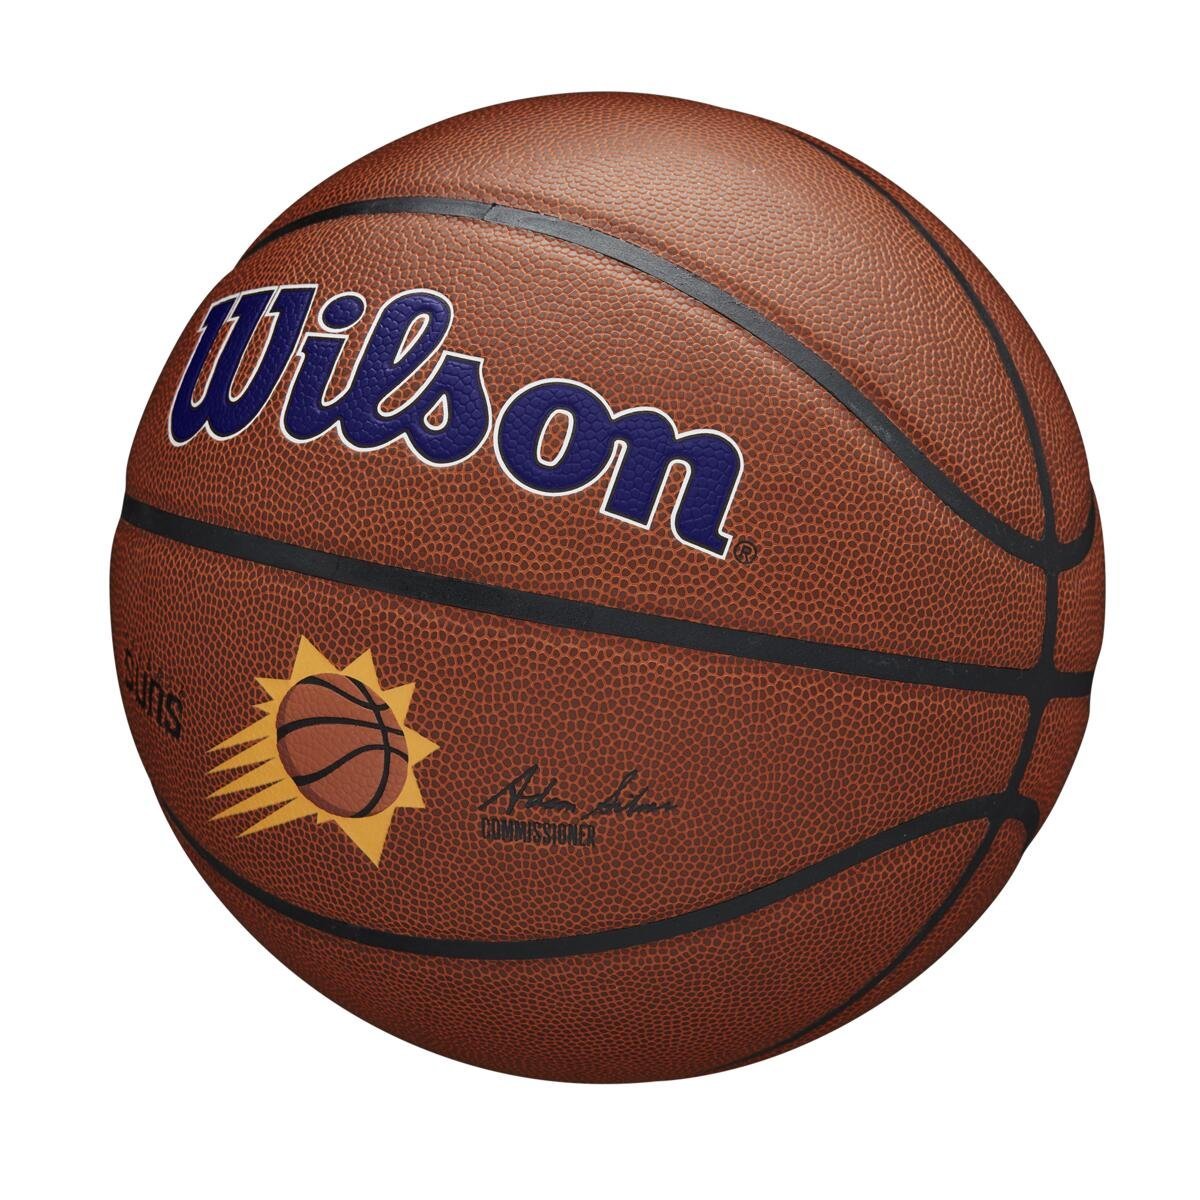 Lopta Wilson NBA Team Alliance Pho Suns - hnedá